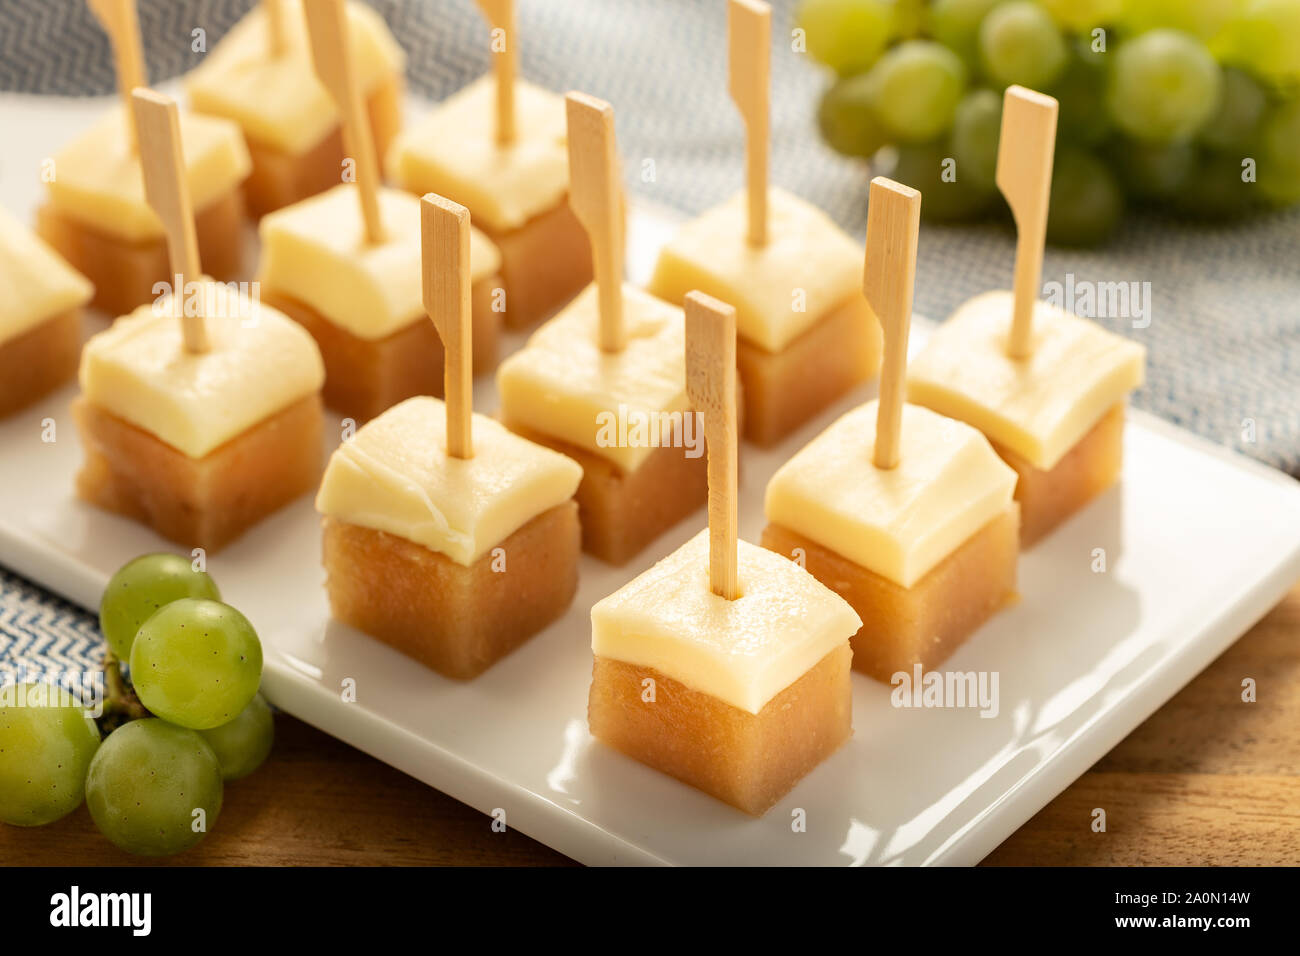 Formaggio con marmellata di mele cotogne sul vassoio. Tipico antipasto spagnolo. snack, Tapa, pintxo dalla Spagna Foto Stock